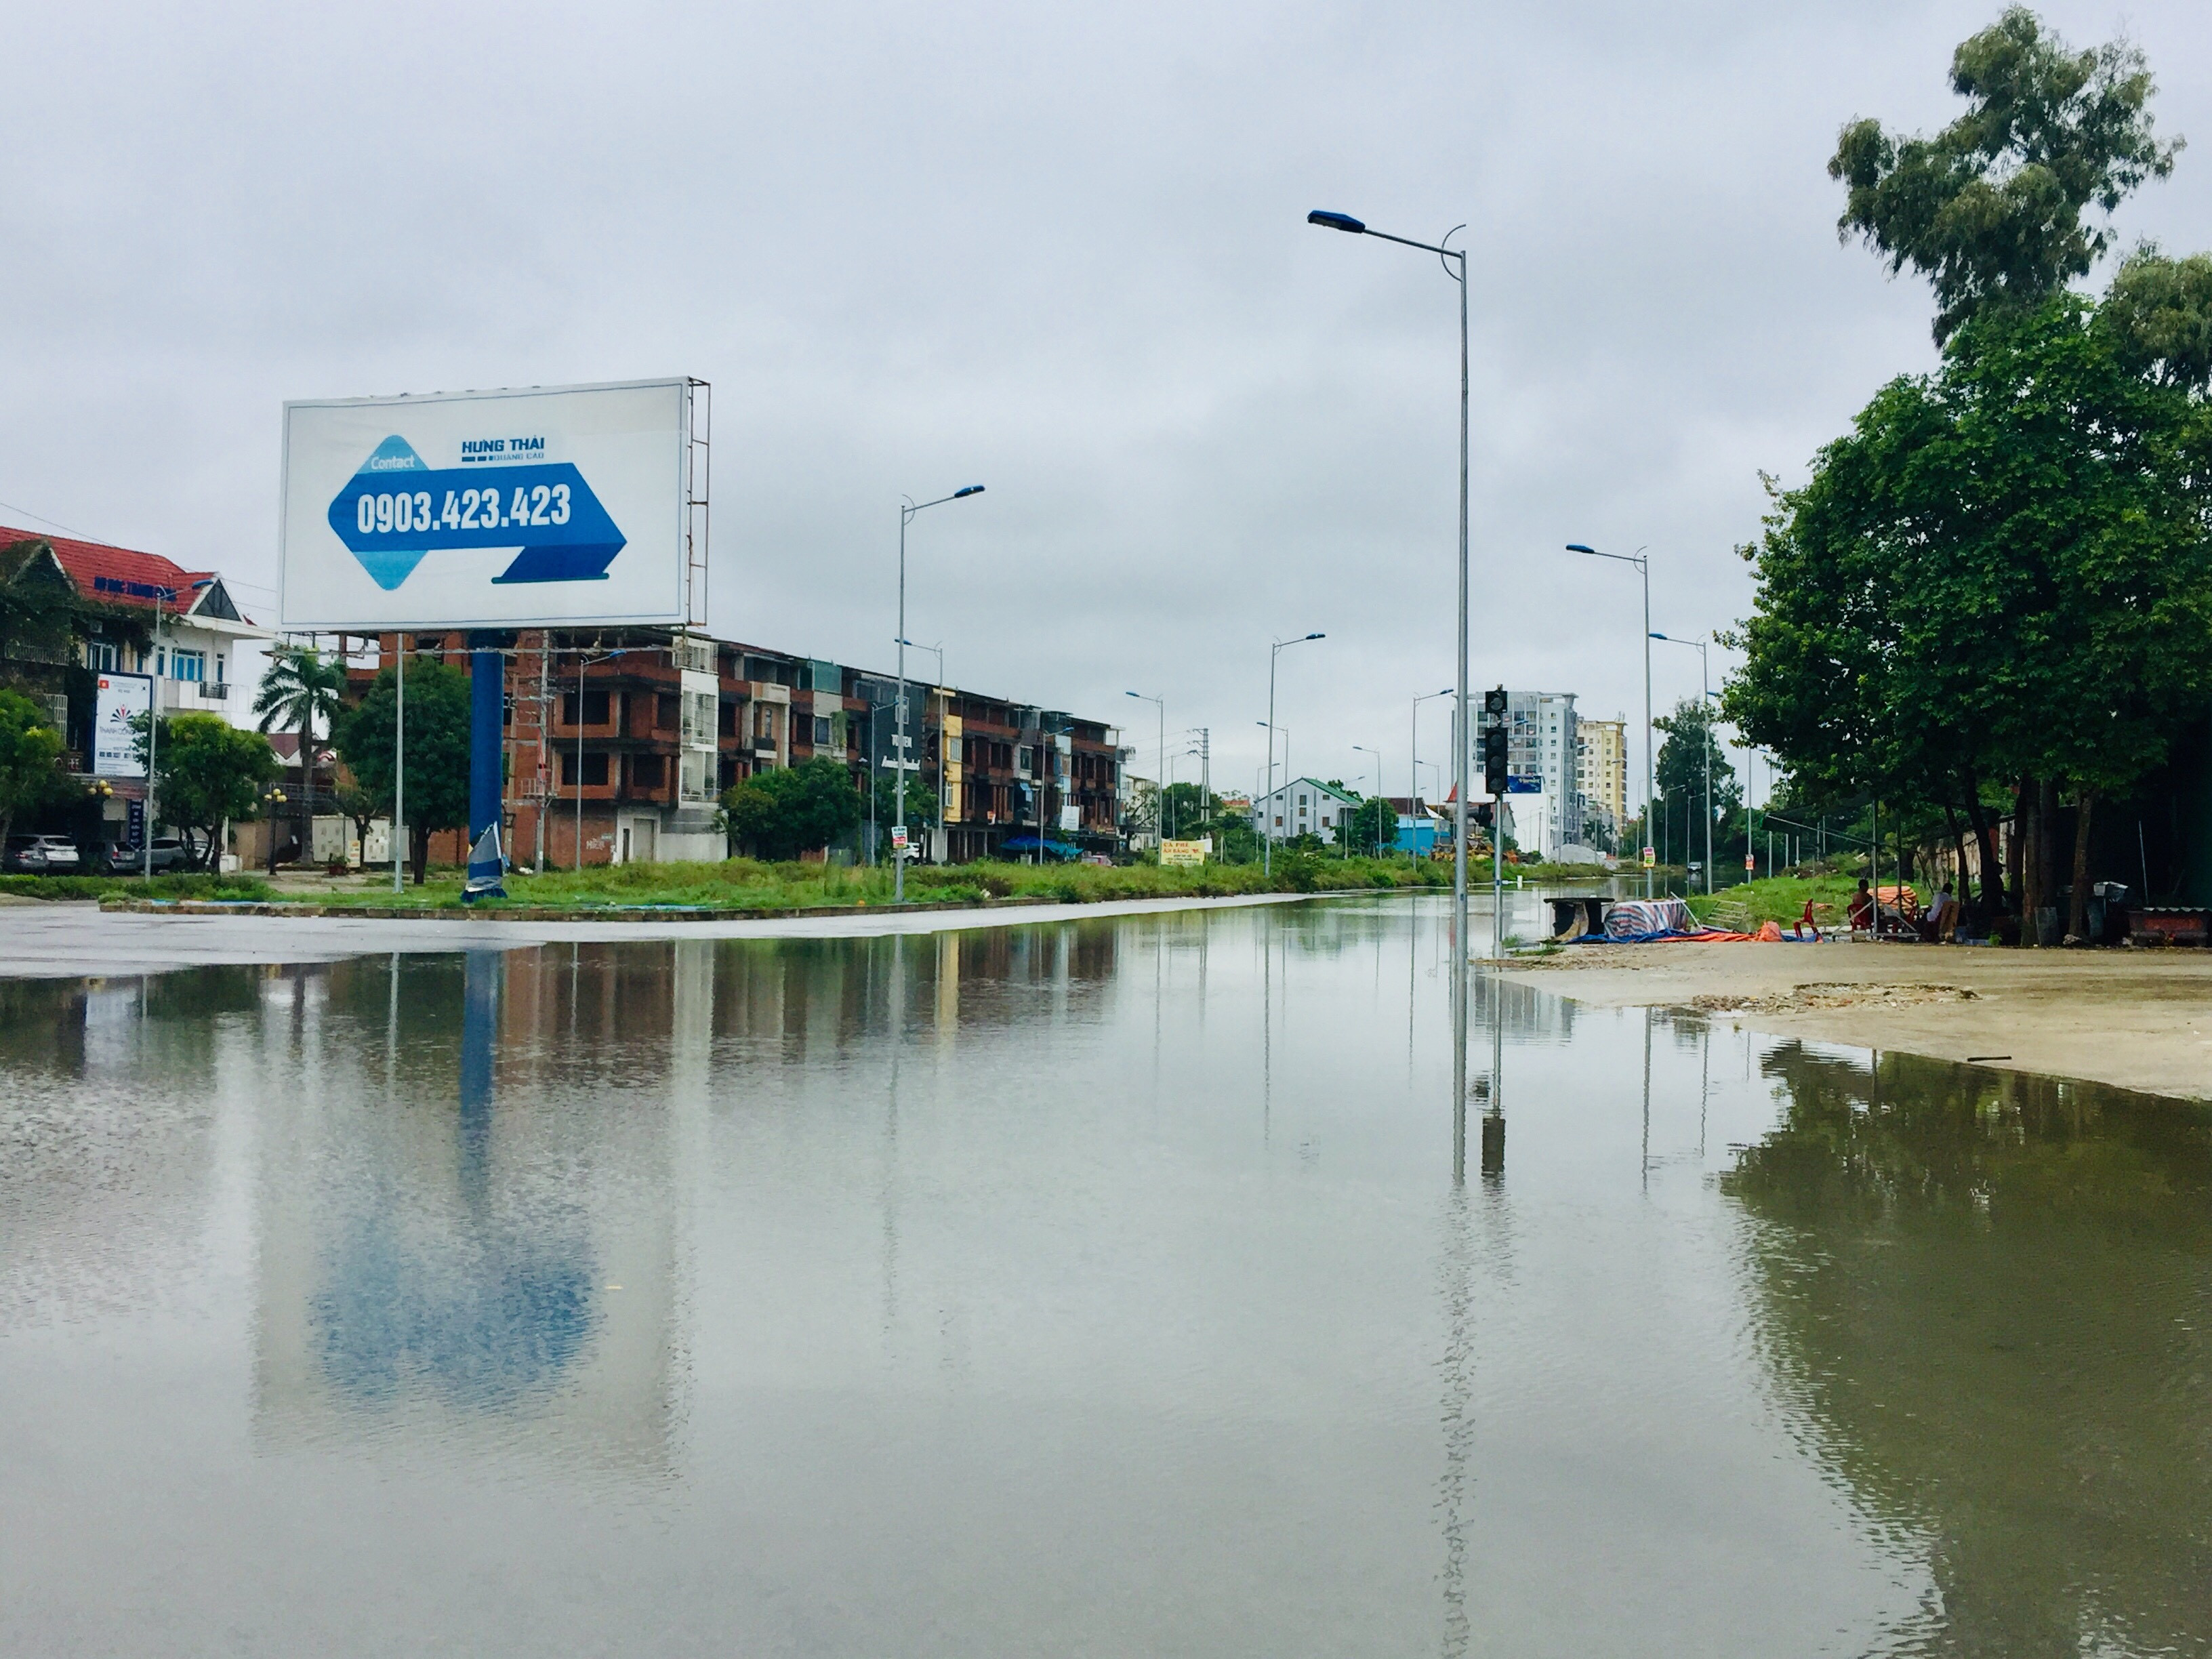 Góc đường 72 m đối diện Chung cư Vinaconex 9 mặc dù mới trải qua trận mưa chưa lớn vào tối 6 và sáng ngày 7/9 nhưng đã ngập nước. Ảnh: Nguyễn Hải